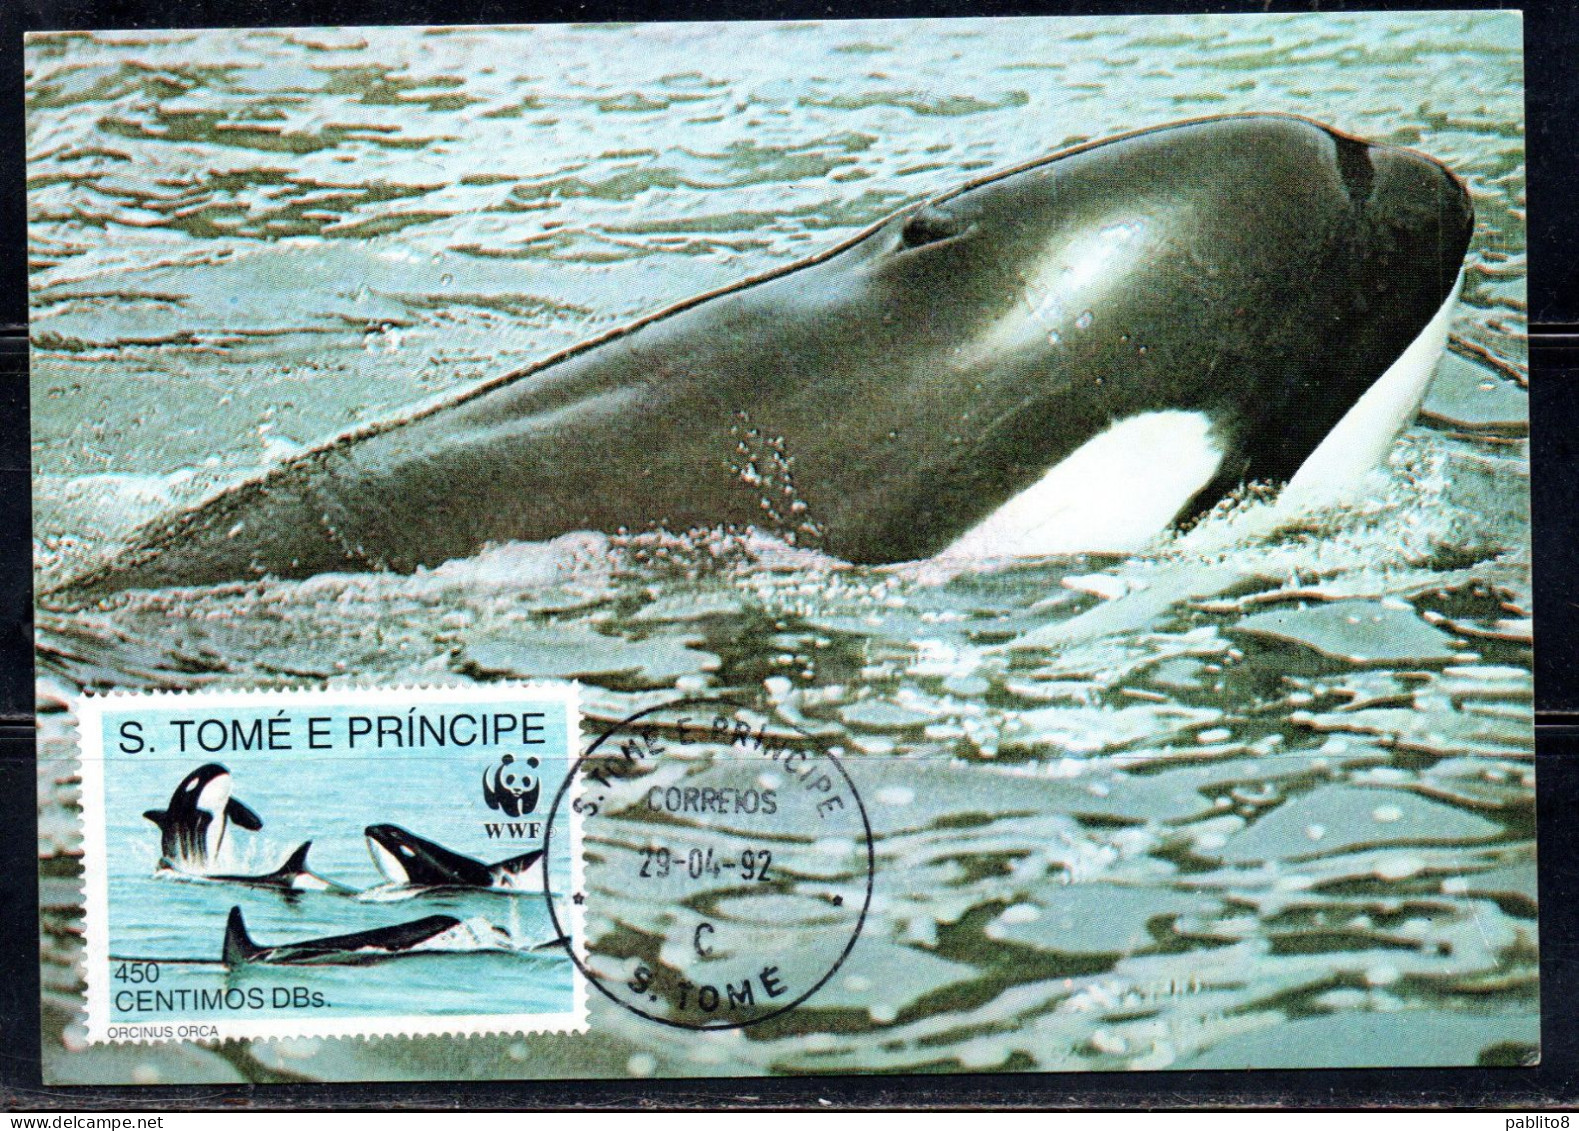 SAO S. SAN TOME' E PRINCIPE 1992 WWF MARINE LIFE FISHES ORCA 450c MAXI MAXIMUM CARD CARTE - Sao Tome Et Principe